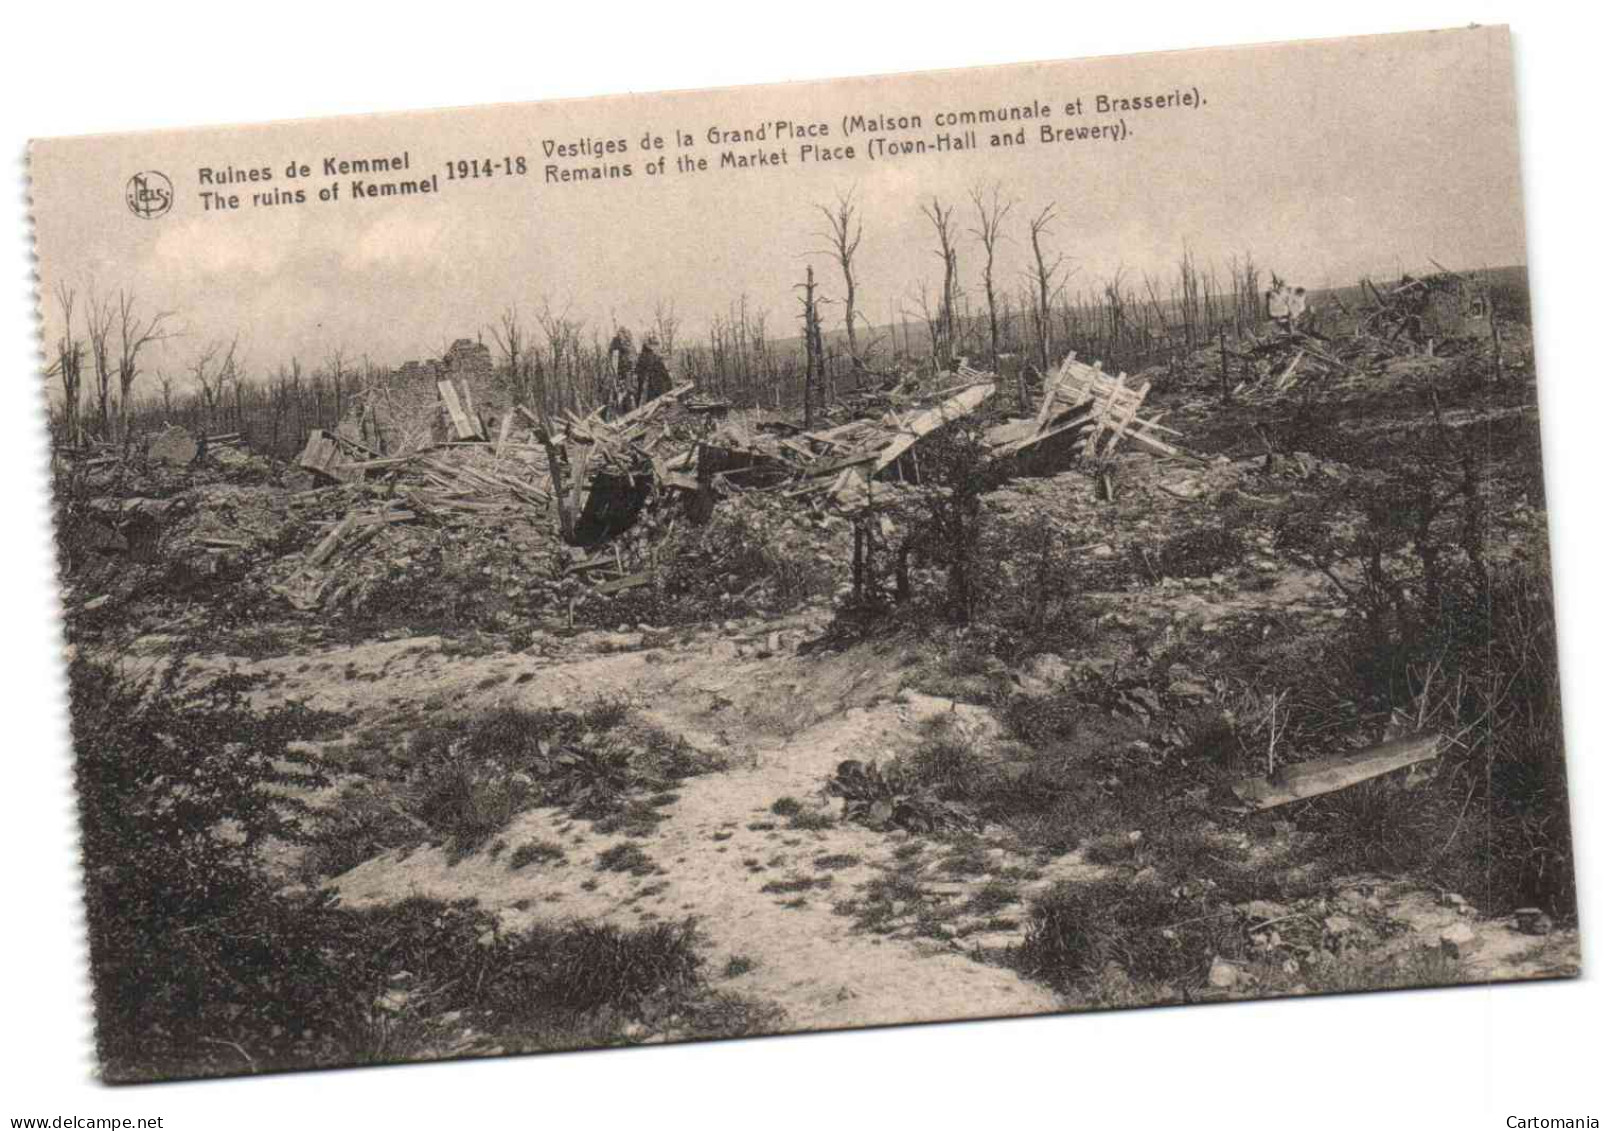 Ruines De Kemmel - 1914-18 -  Vstiges De La Grand'Place (Maison Communale Et Brasserie) - Hooglede